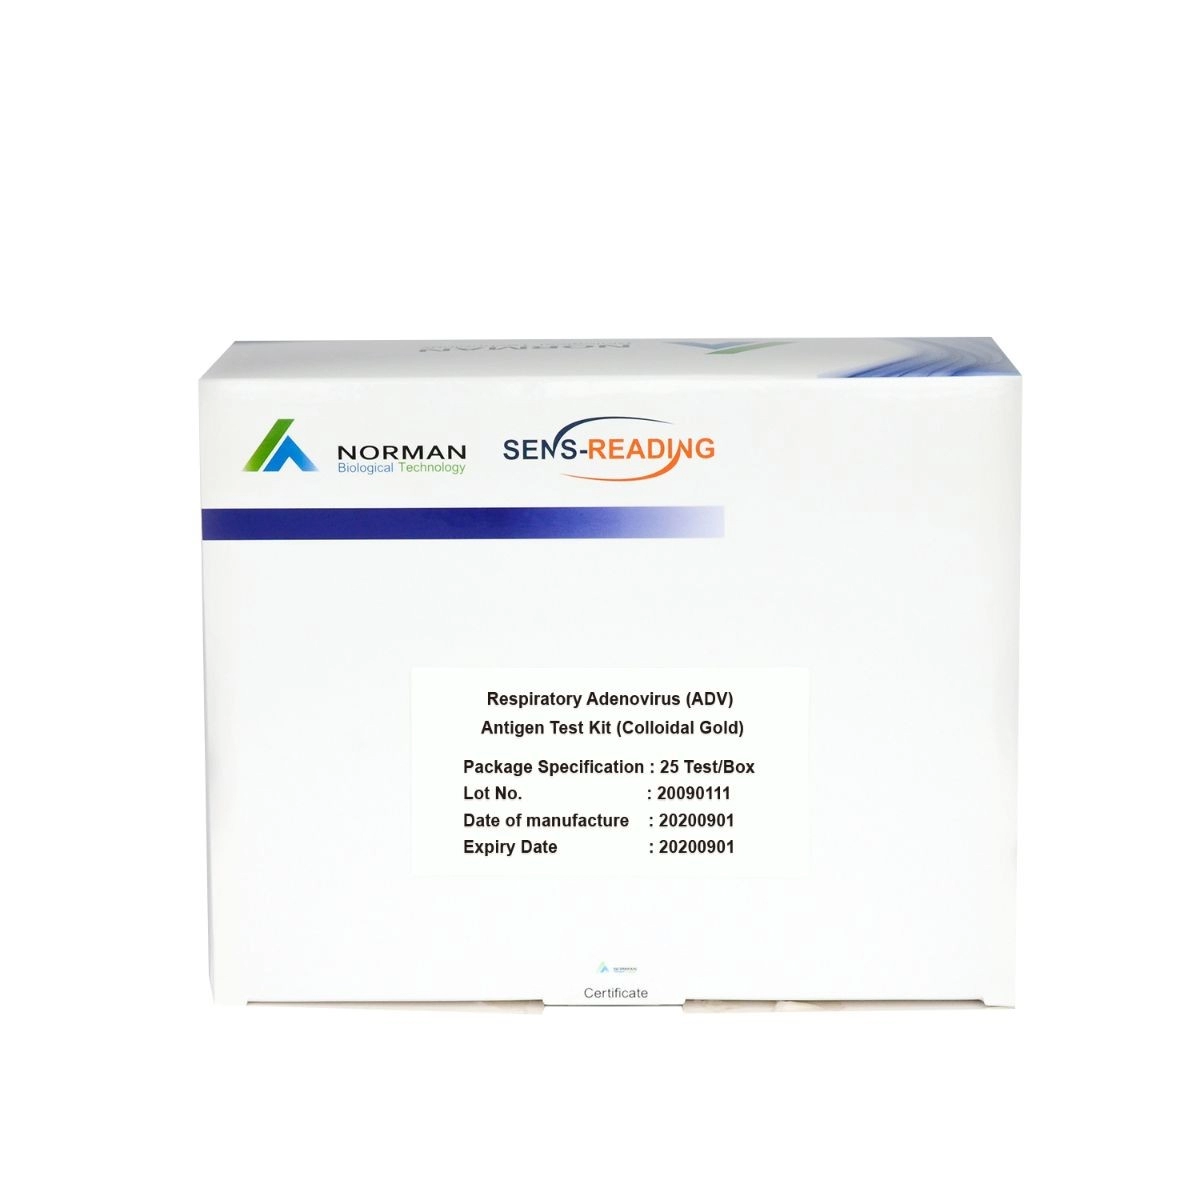 Respiratory Adenovirus (ADV) Antigen-Testkit